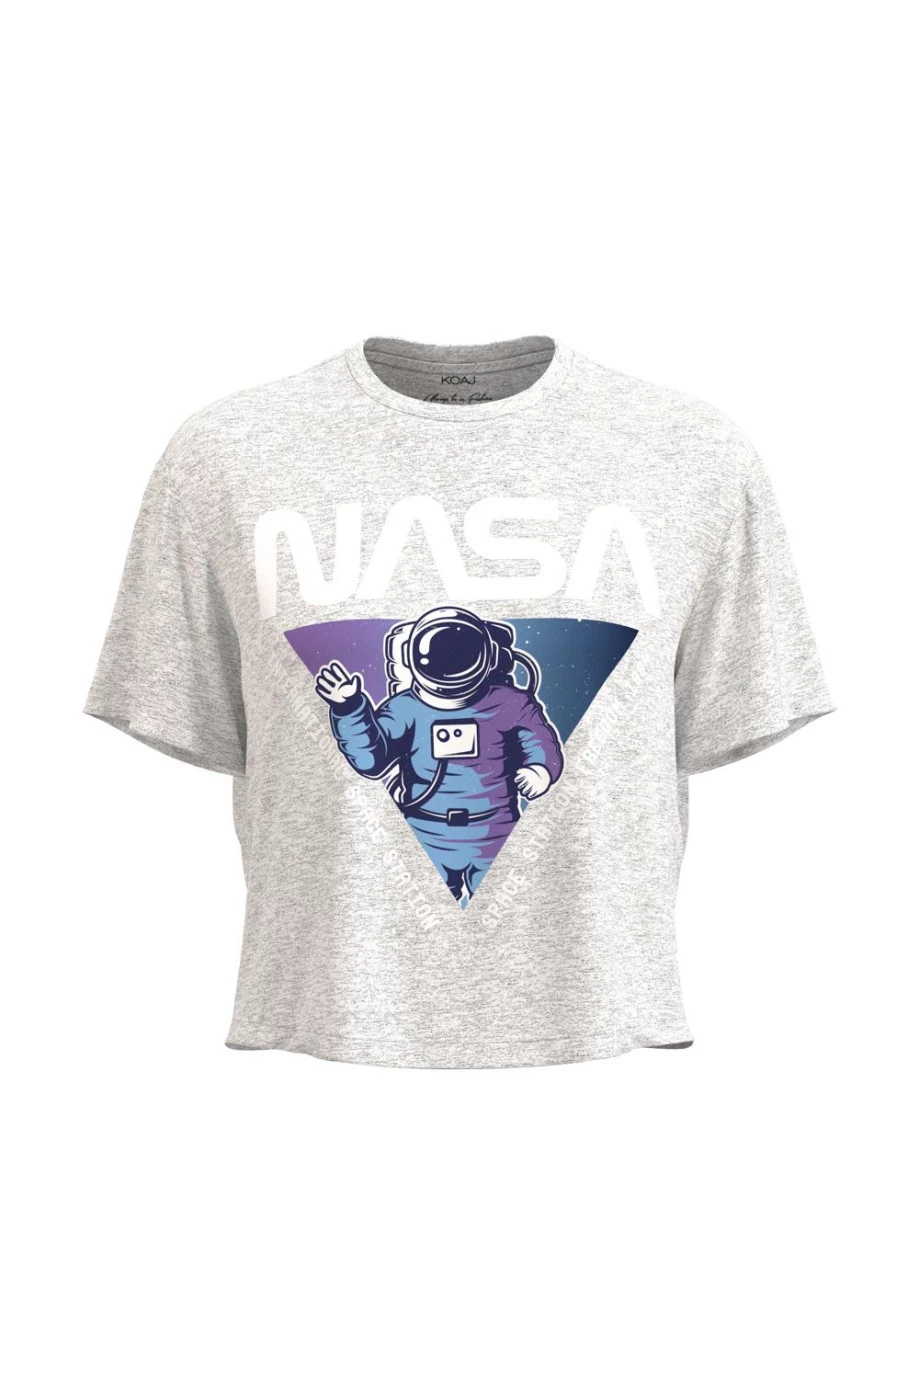 Camiseta crop top unicolor con diseño de NASA en frente